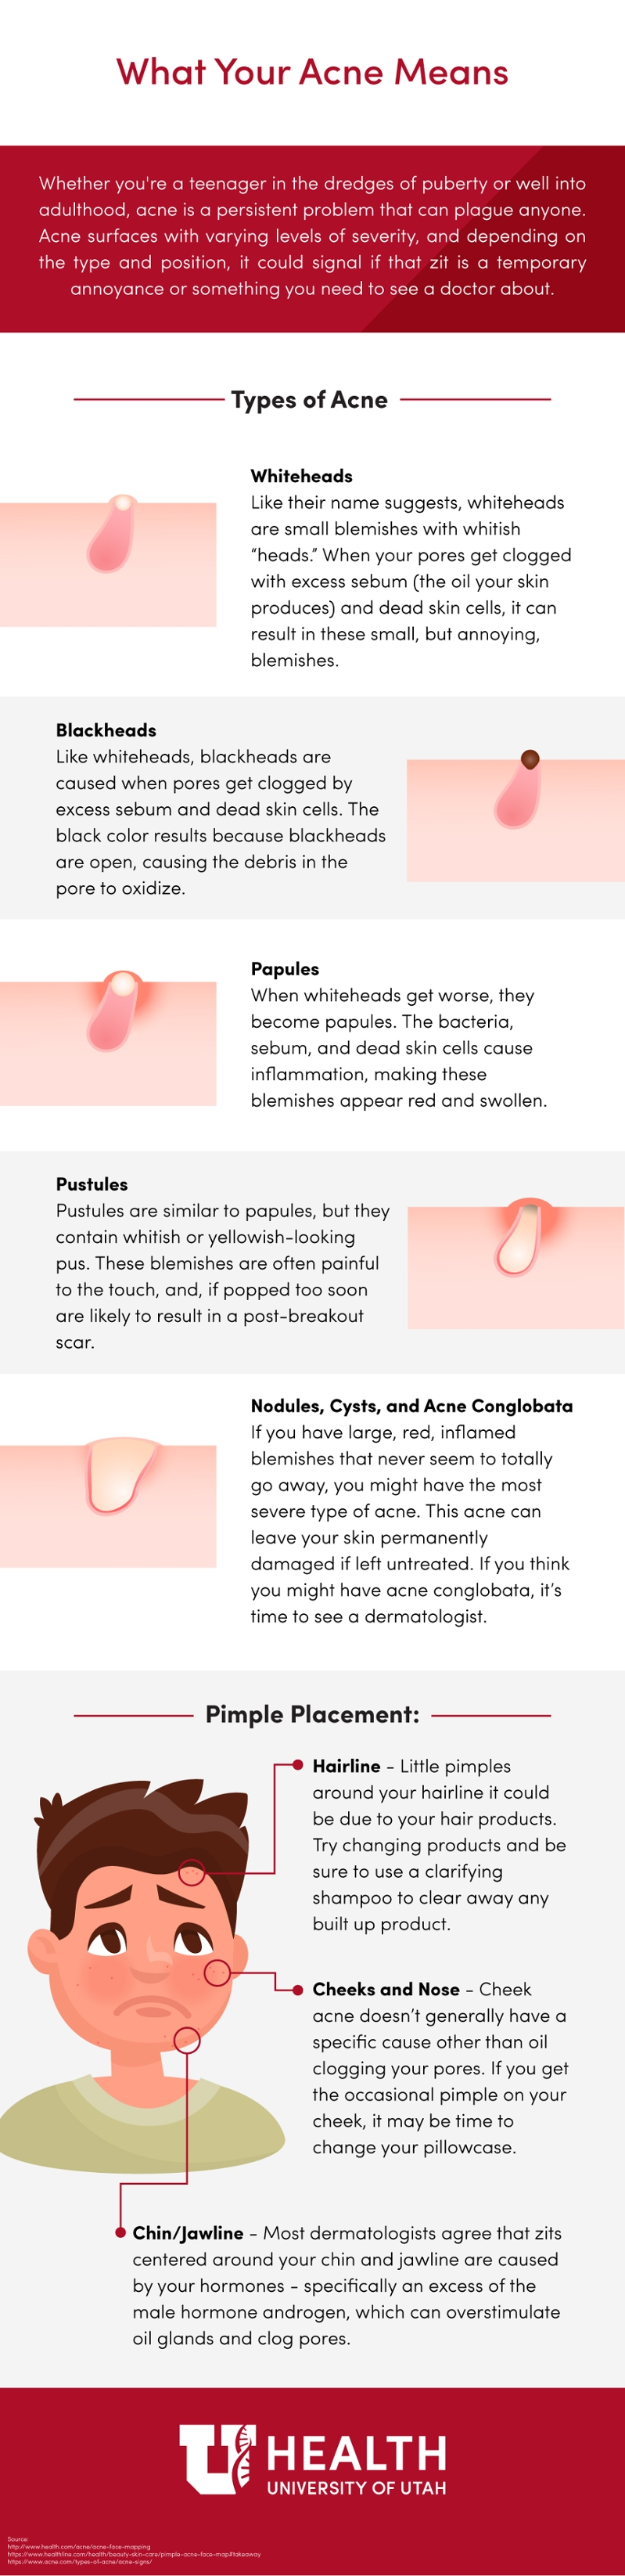 acne infographic